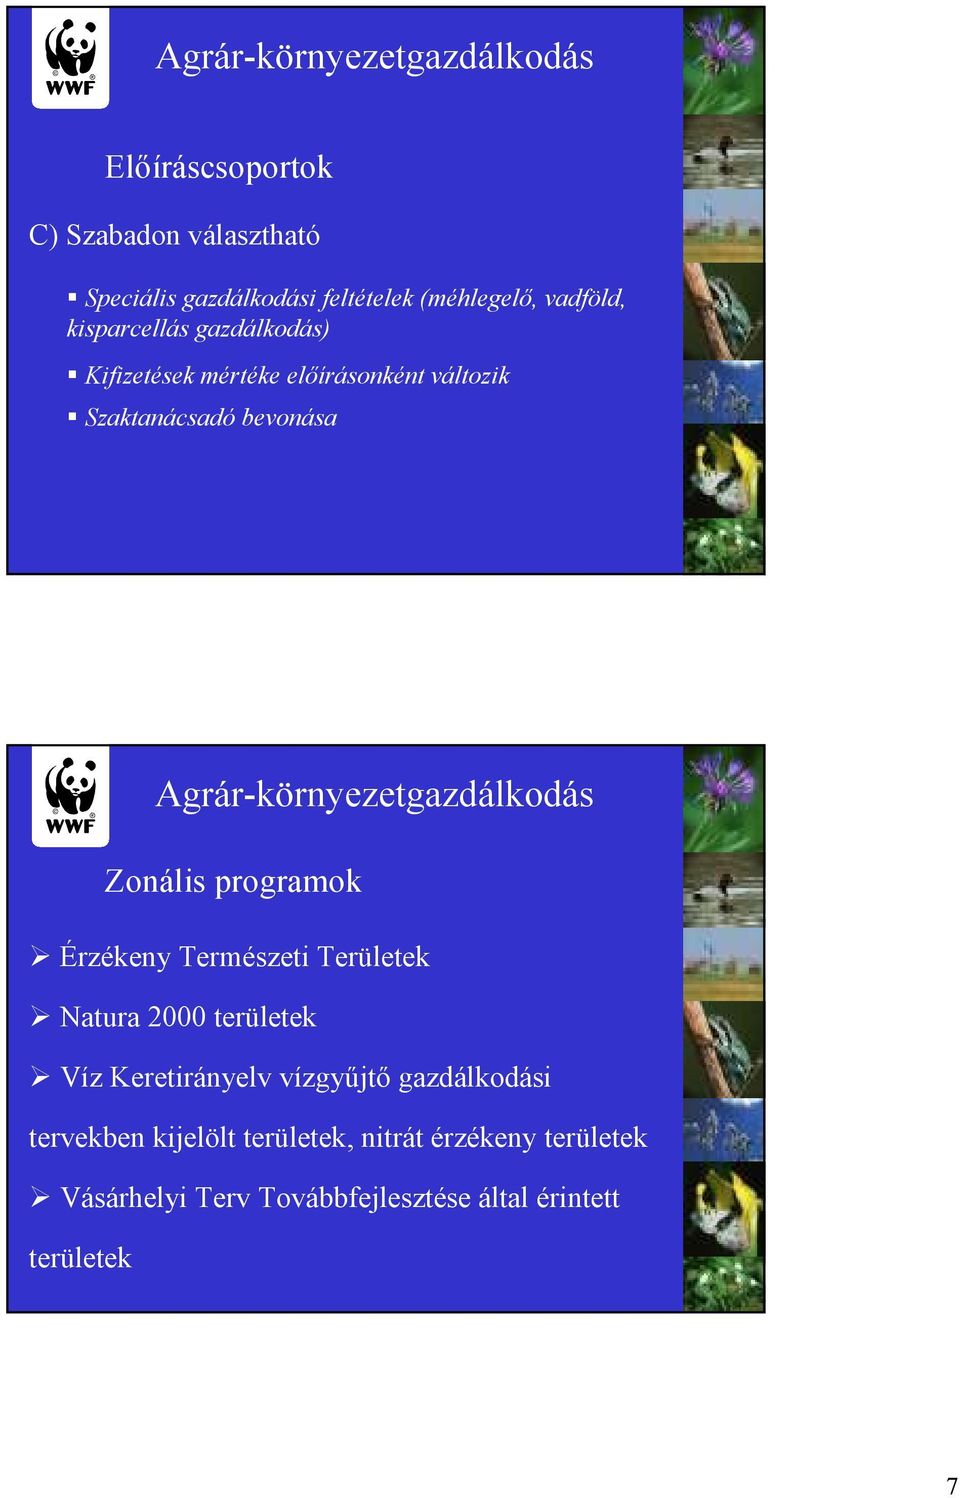 Agrár-környezetgazdálkodás Zonális programok Érzékeny Természeti Területek Natura 2000 területek Víz Keretirányelv